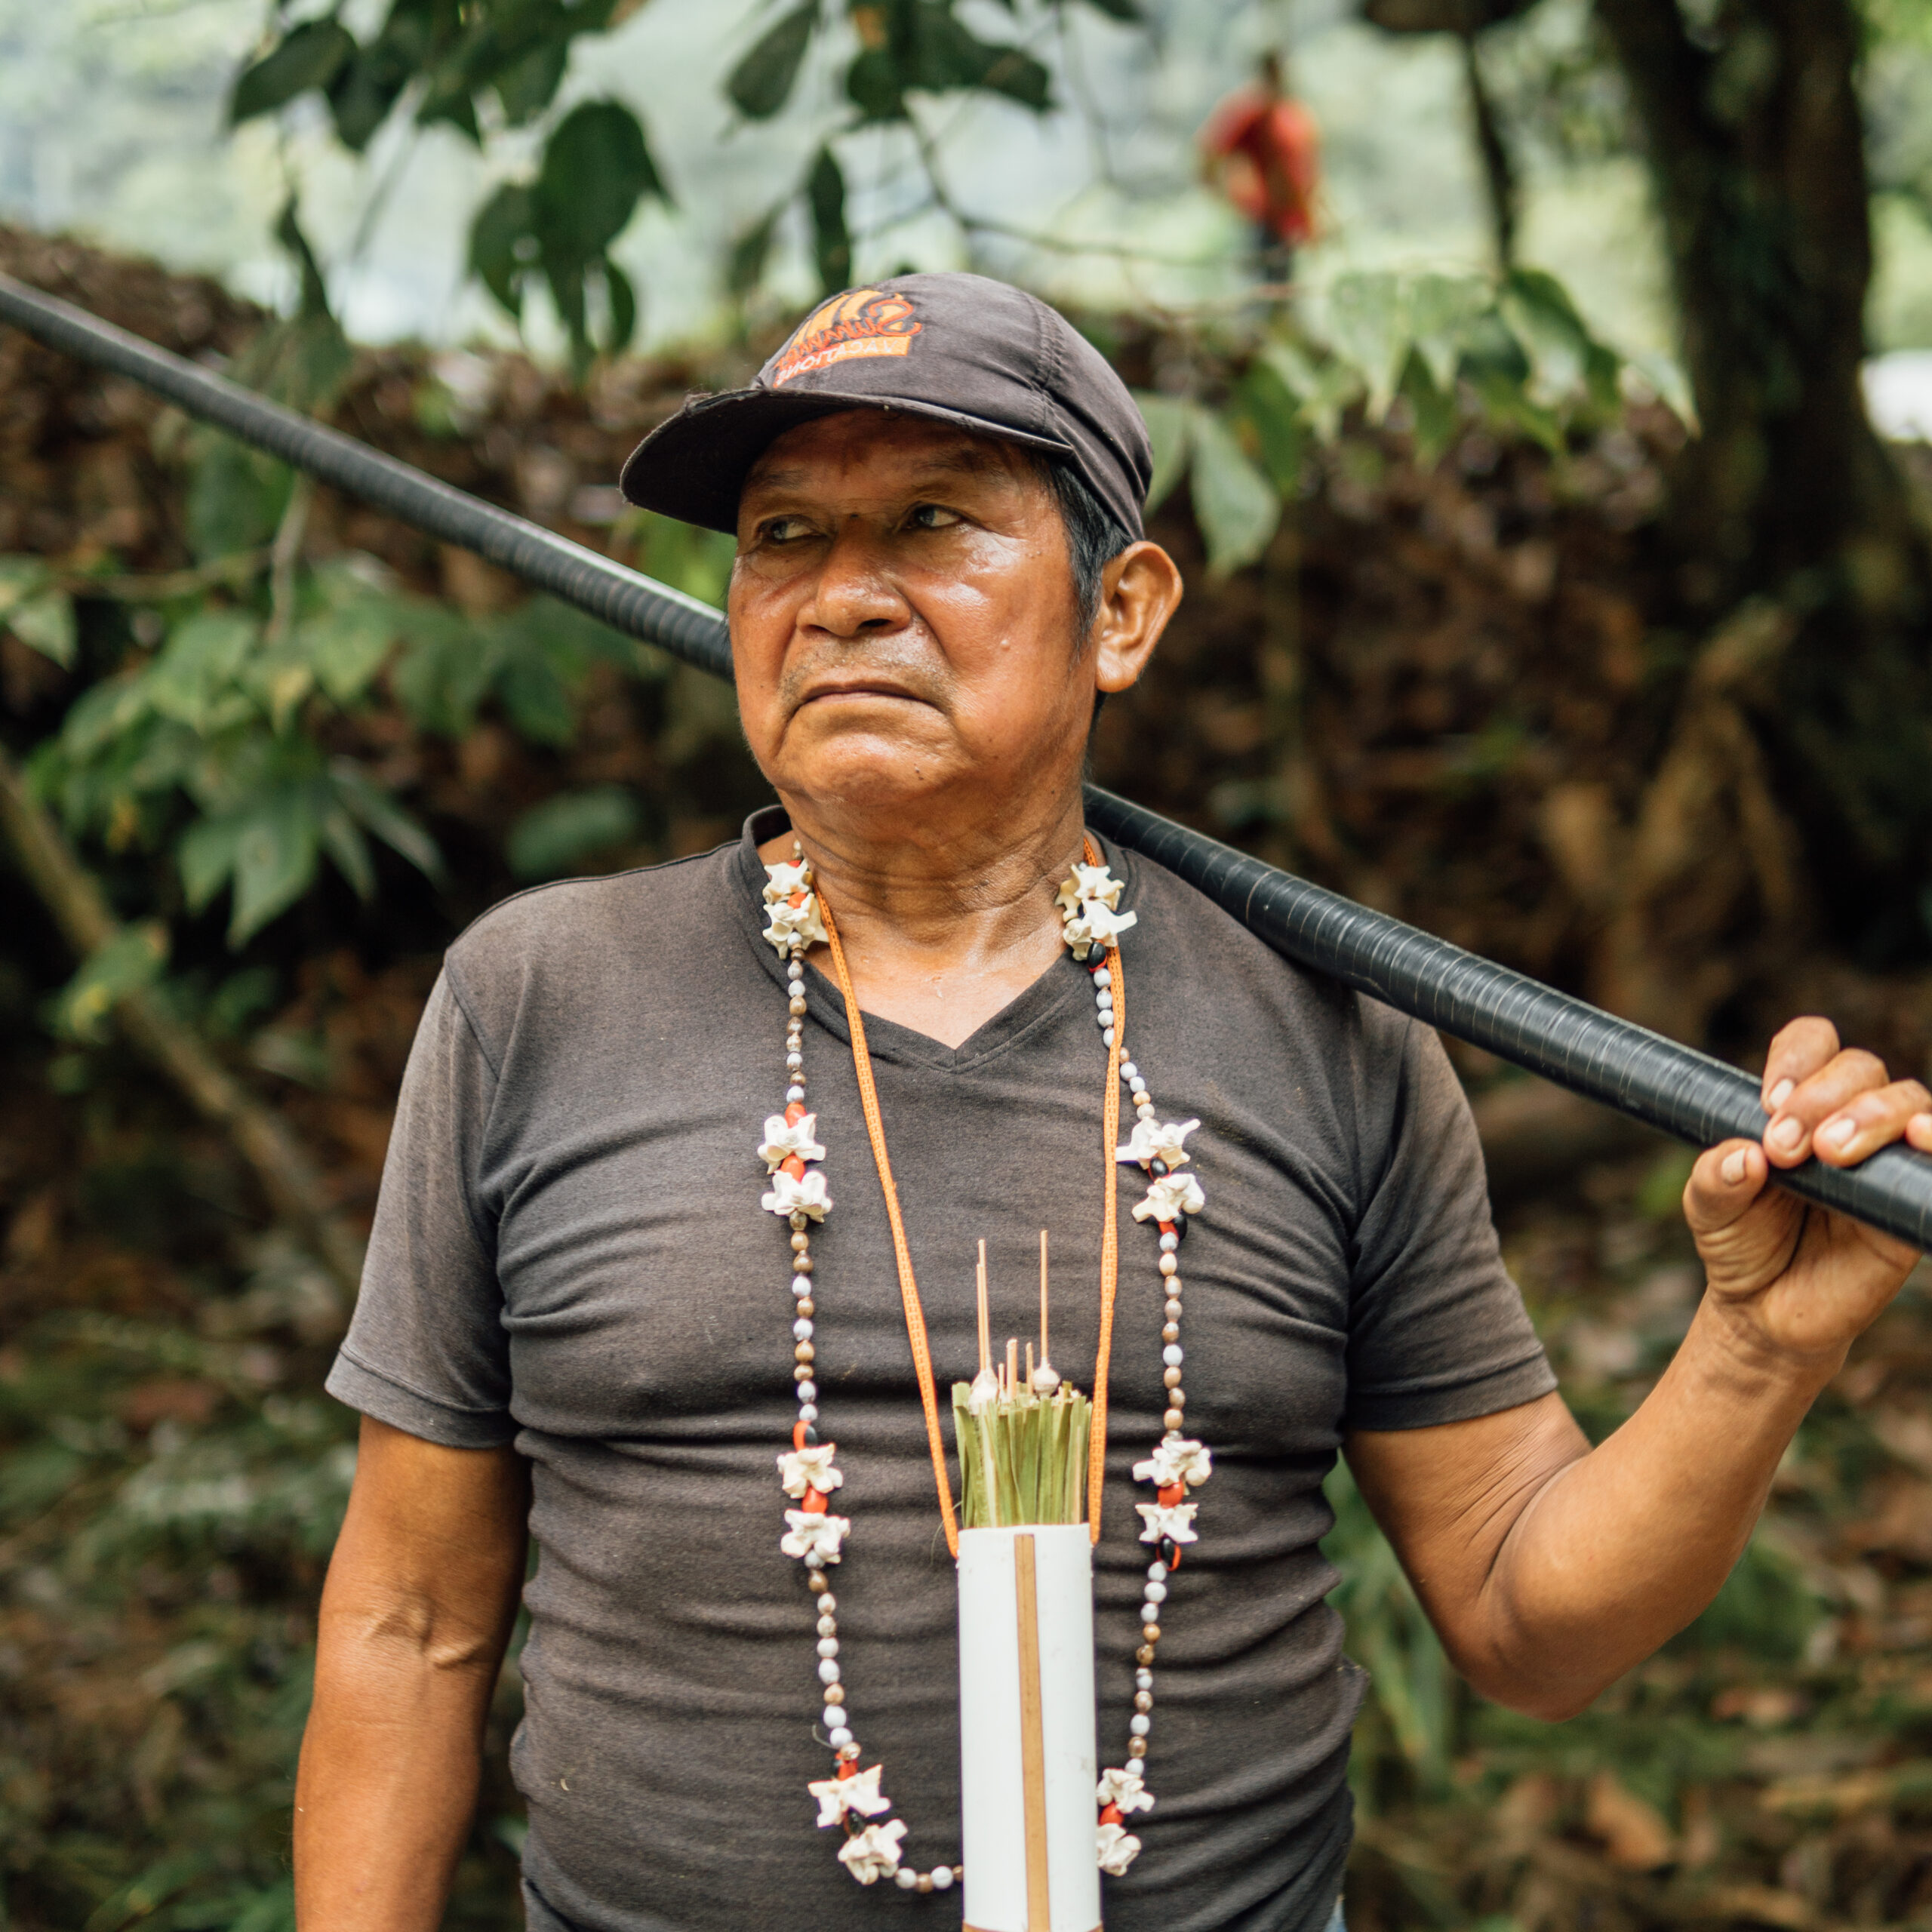 Hombre indígena kichwa con su cerbatana tradicional para cazar en uno de nuestros viajes culturales inmersivos al Amazonas